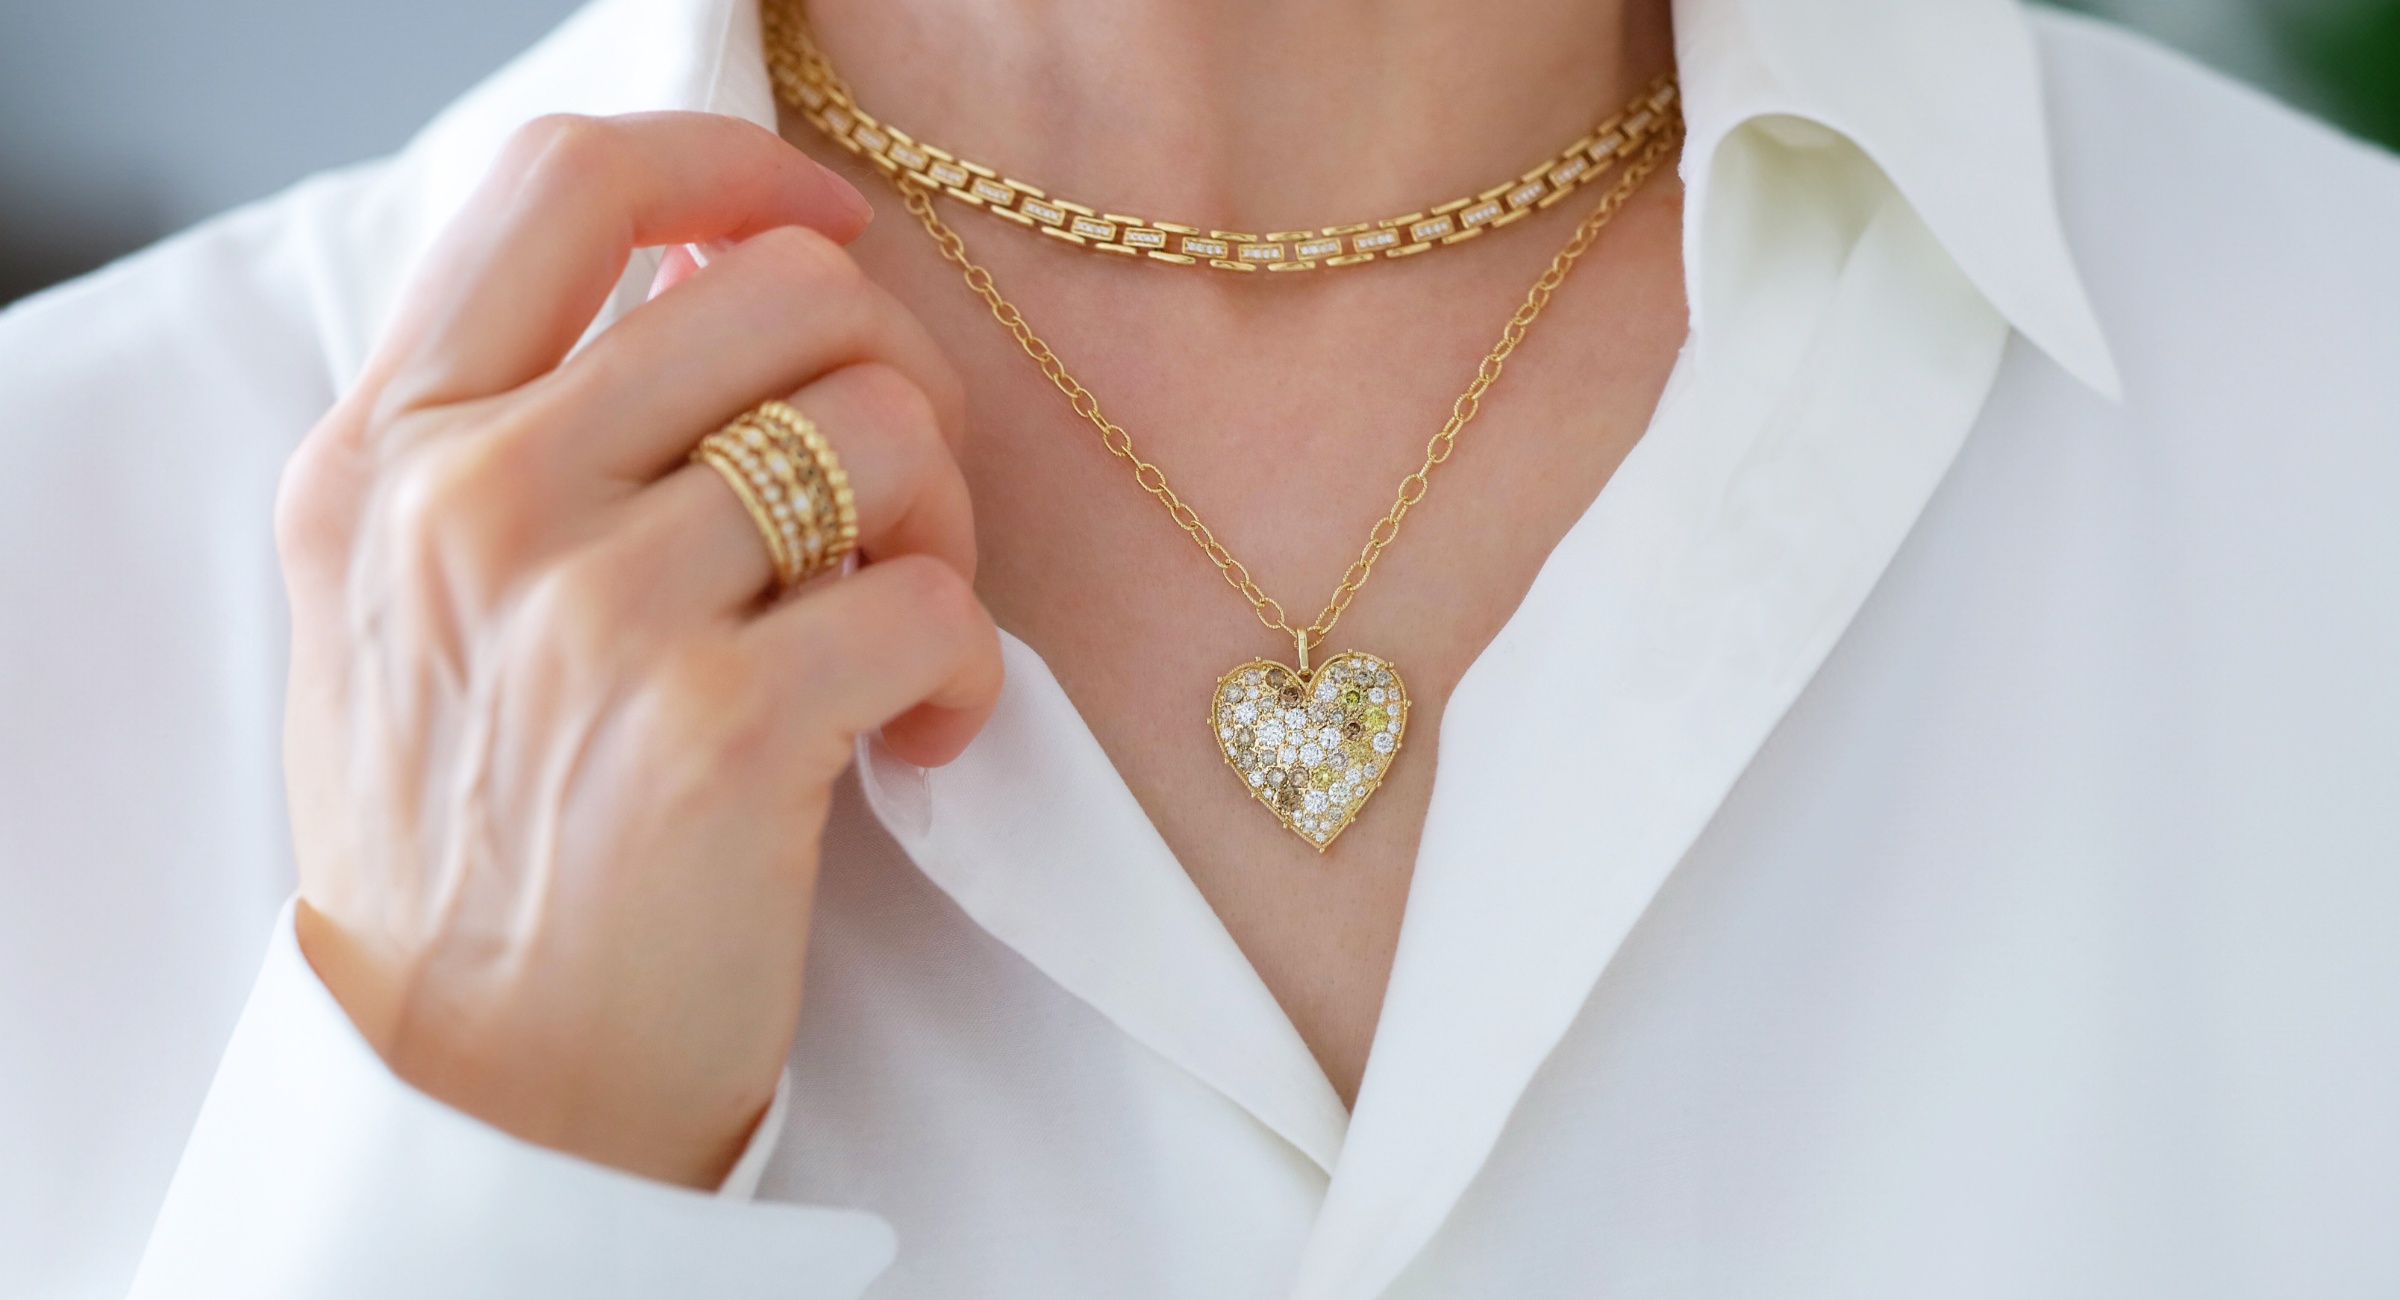 Model wears Cesta White Diamond Necklace layered with Confetti Heart Multi-Color Diamond Pendant